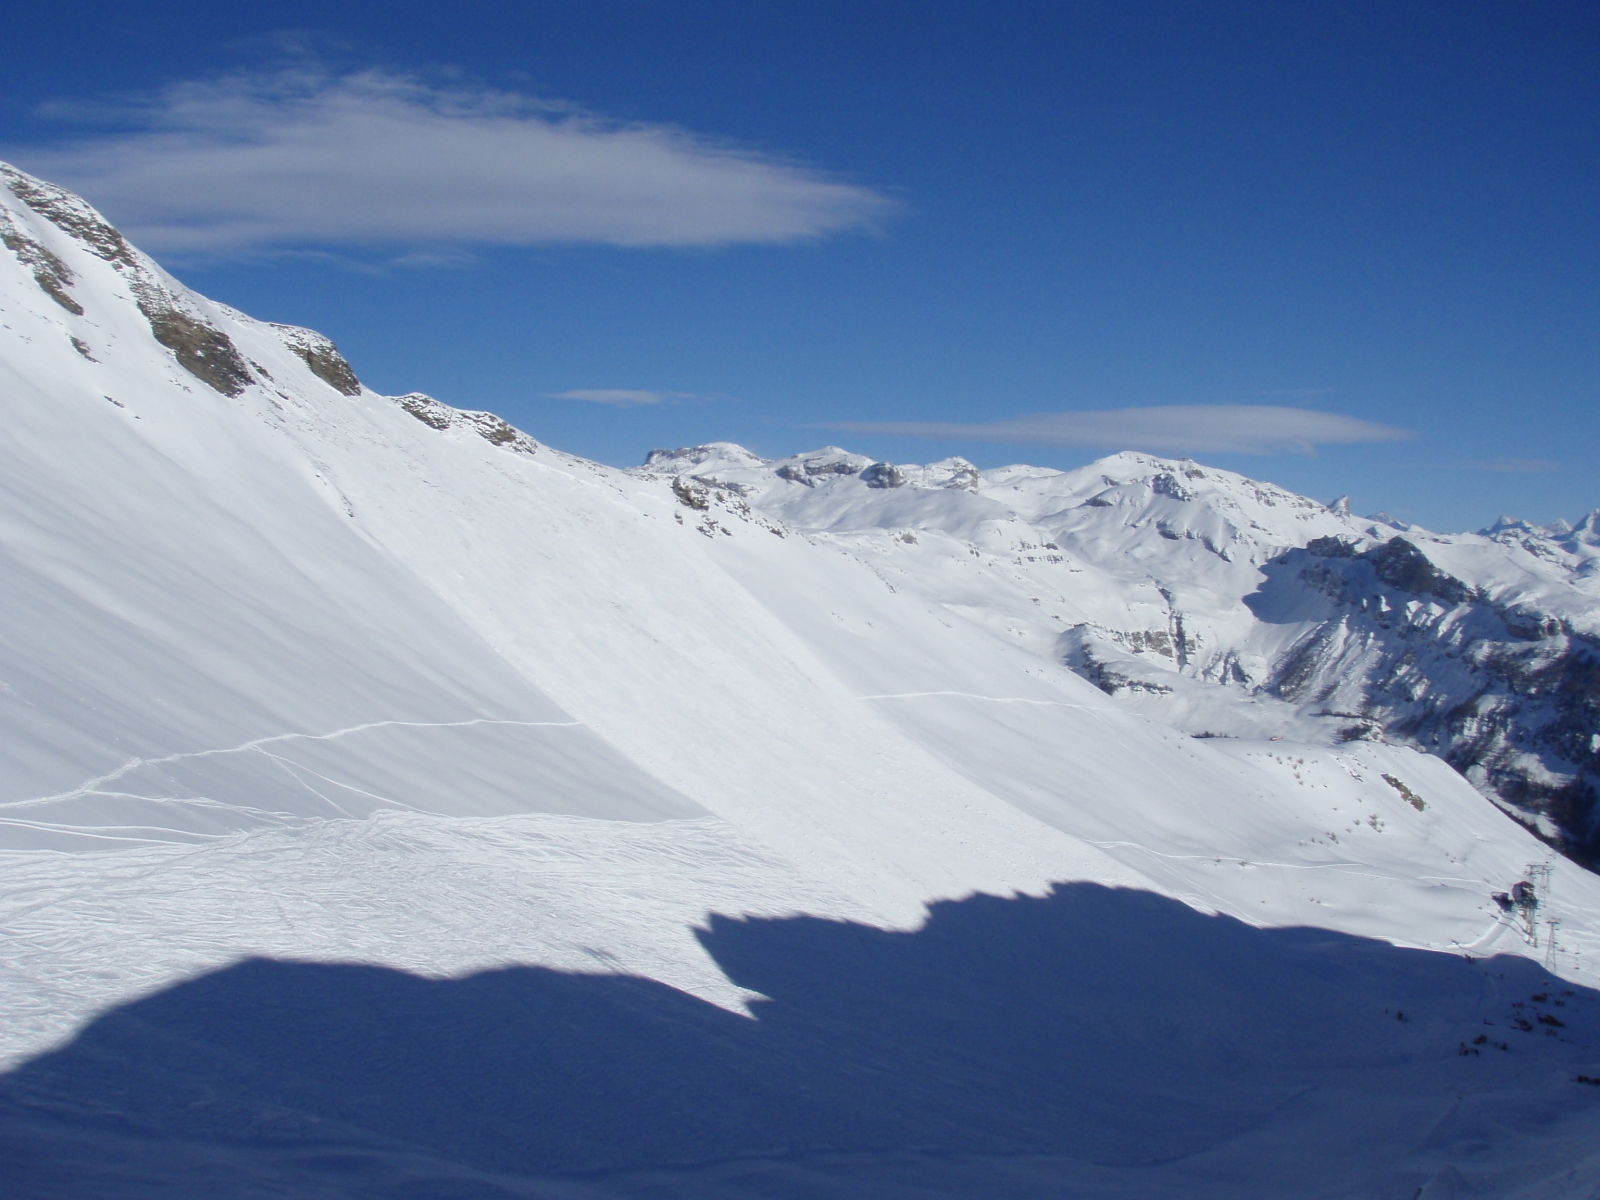 L'avalanche de 2009 faisait 430 mètres de long sur 120 de large.